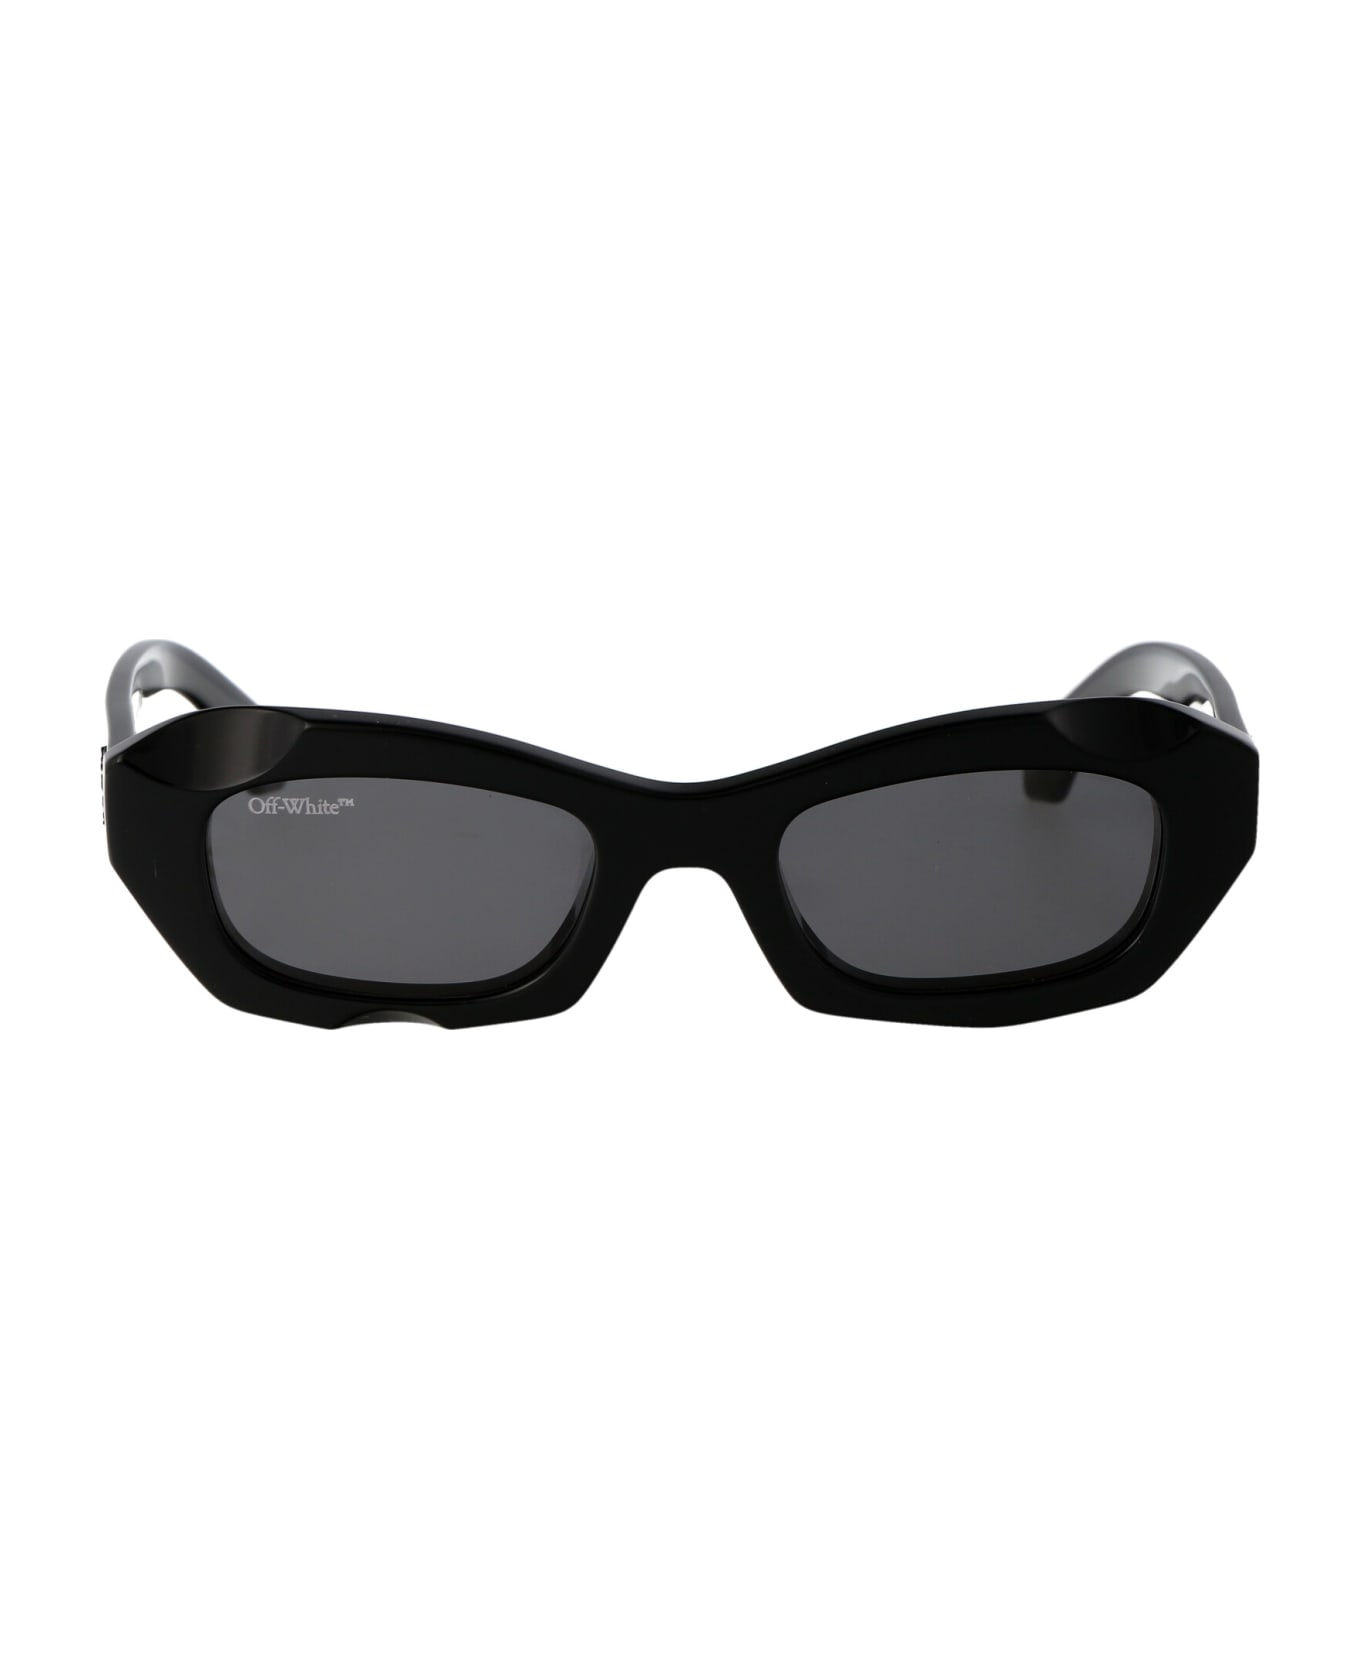 Off-White Venezia Sunglasses - 1007 BLACK